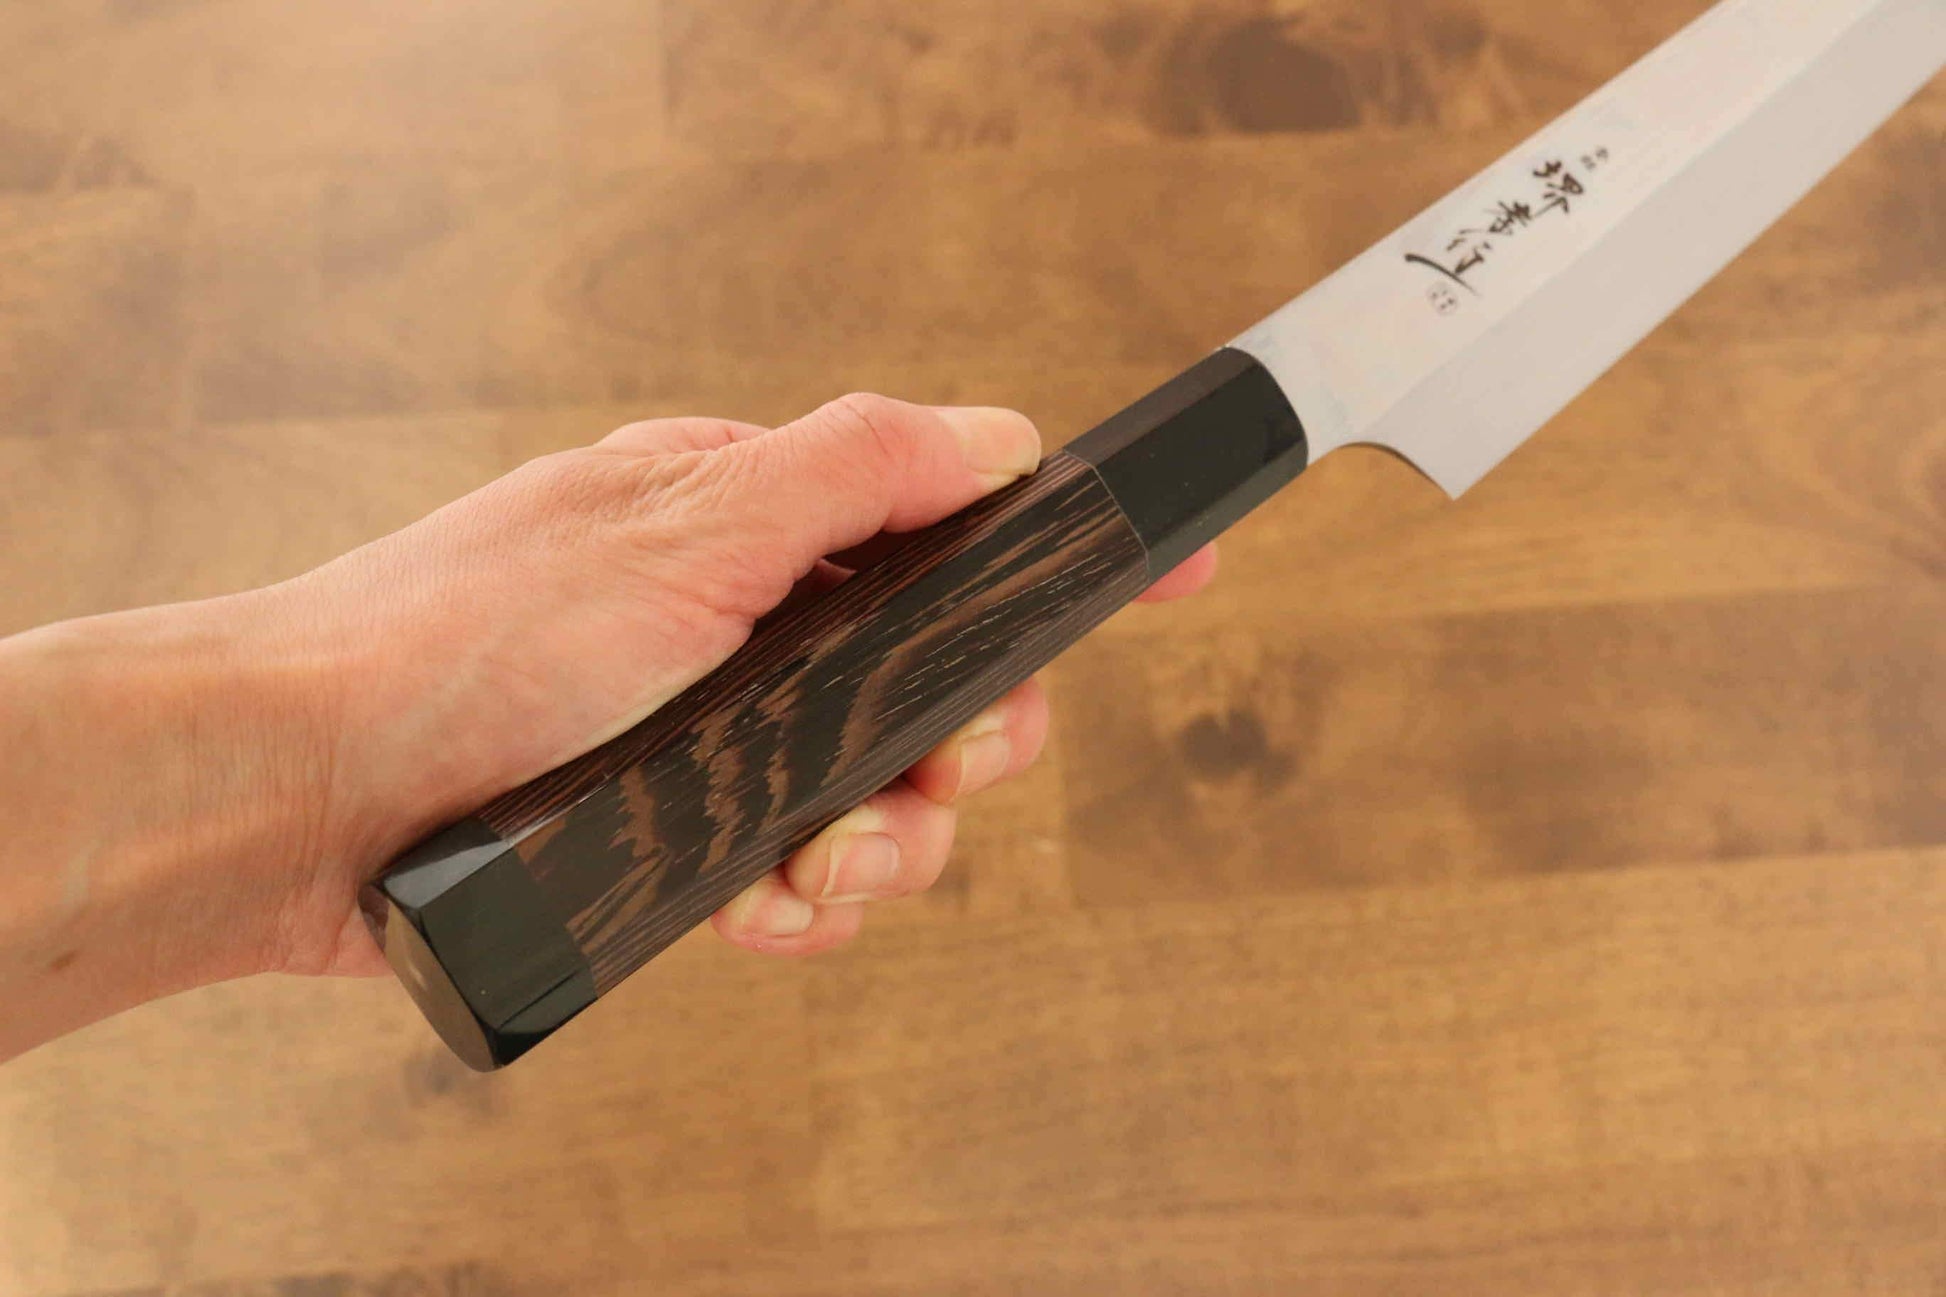 Sakai Takayuki Ginryu Honyaki Swedish Steel Mirrored Finish Sakimaru Yanagiba Japanese Knife 300mm Wenge with Double Water Buffalo Ring Handle with Sheath - Japanny - Best Japanese Knife